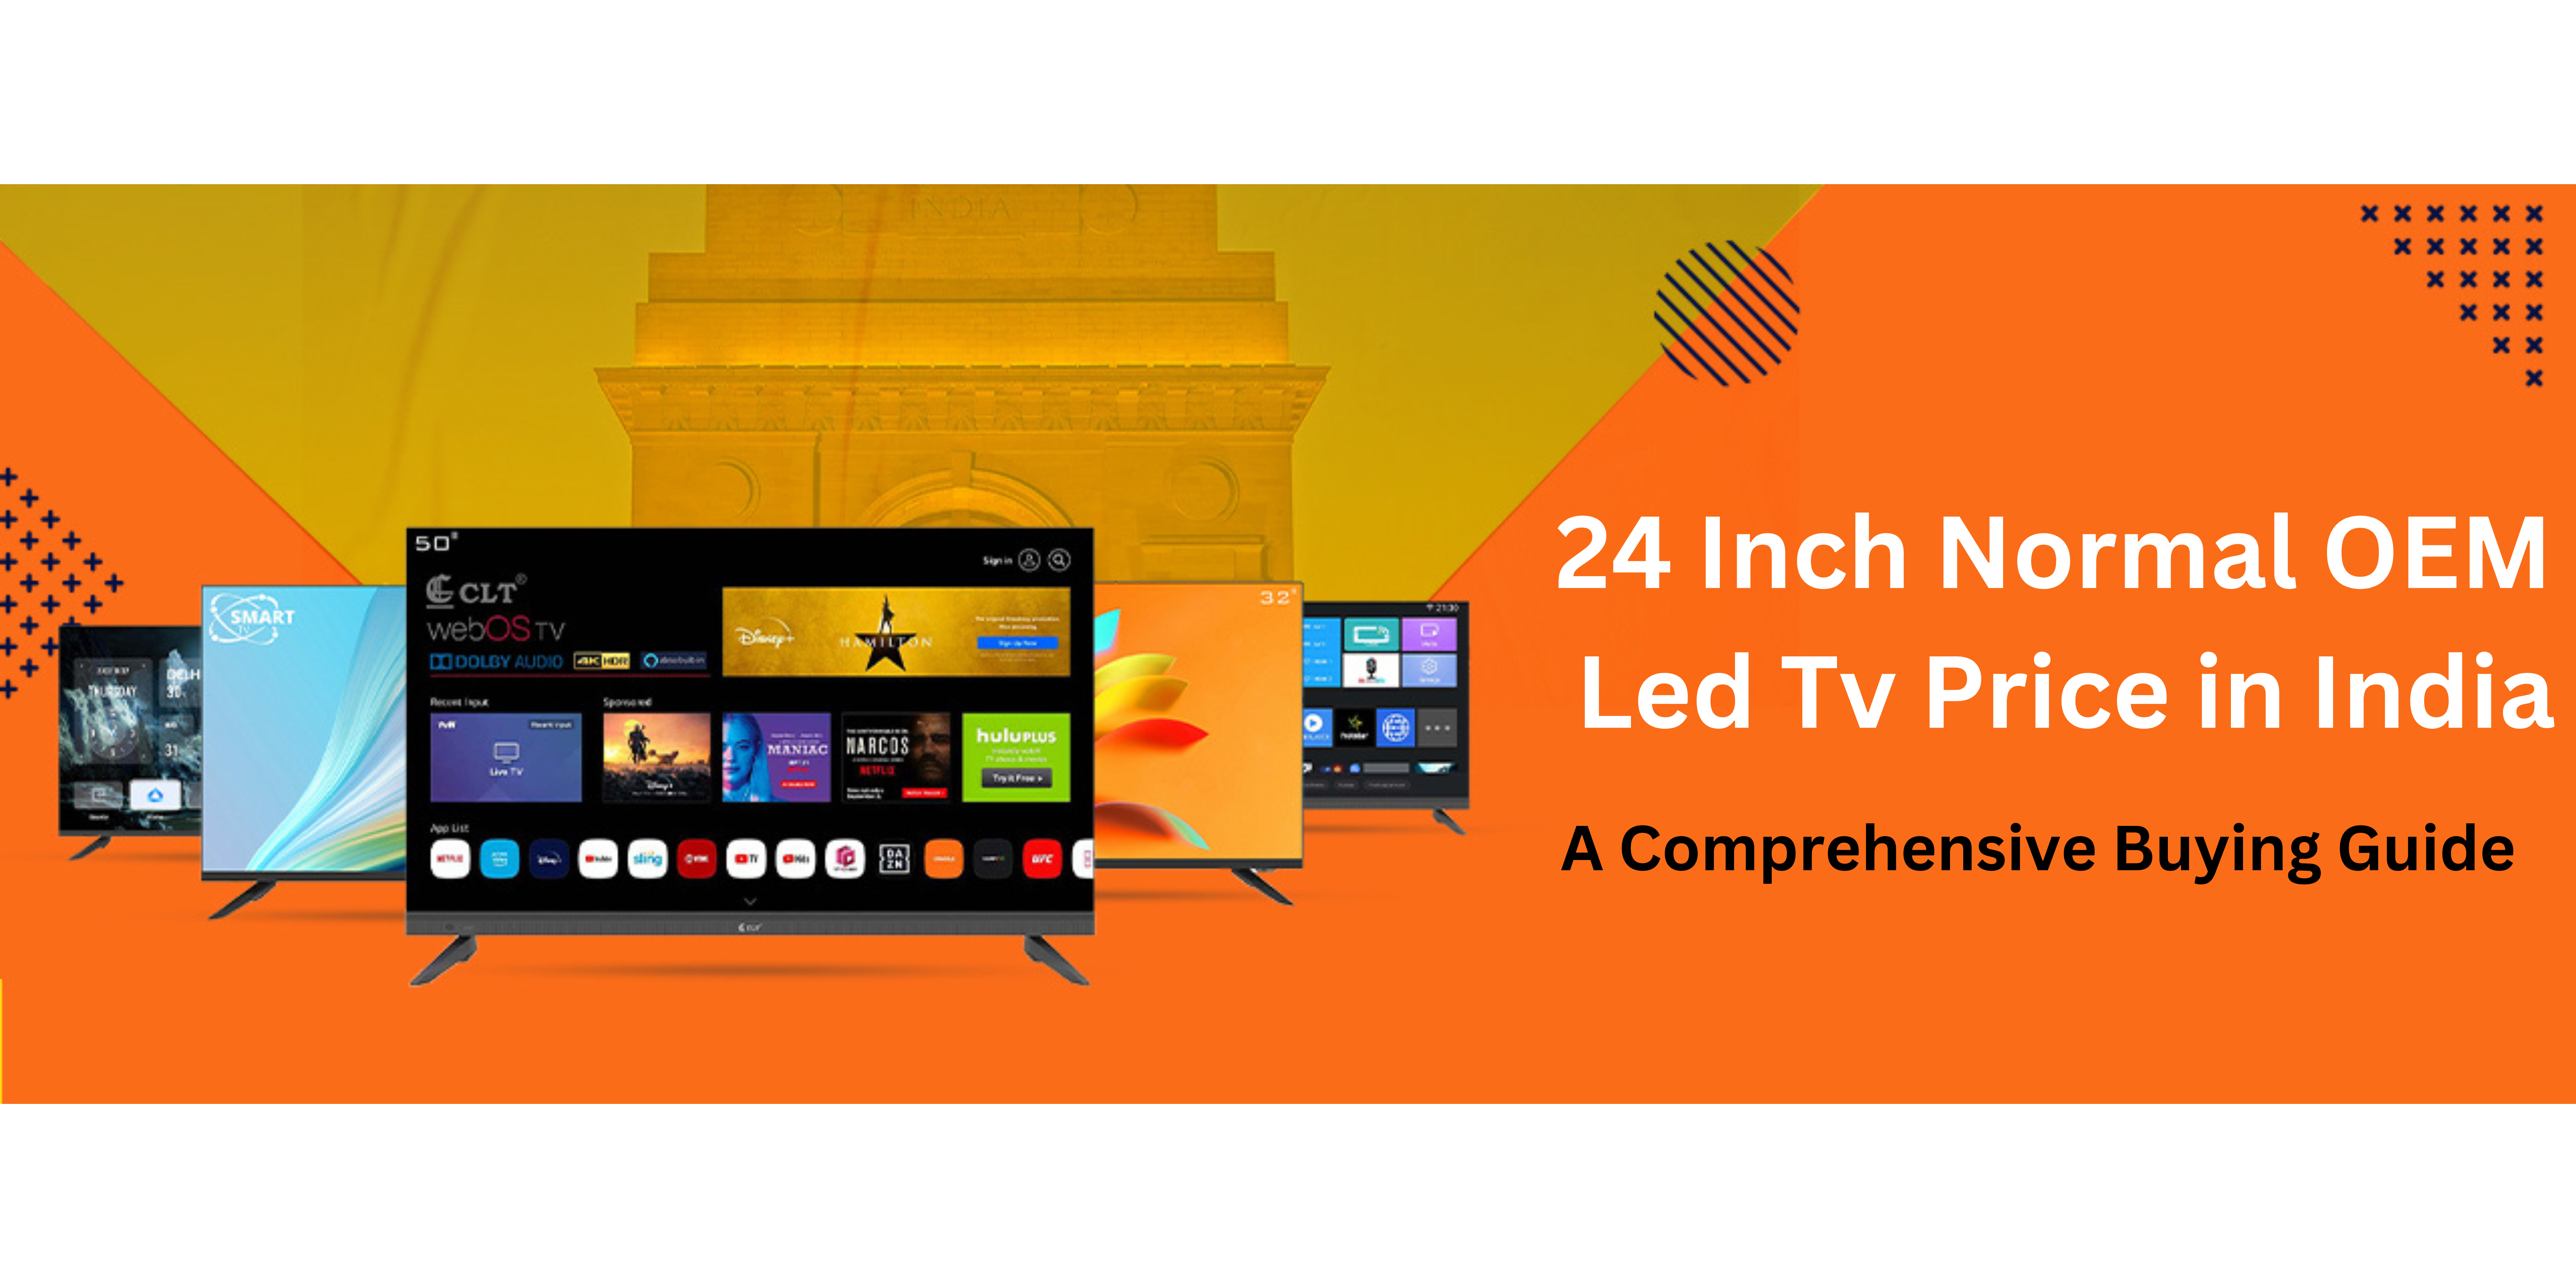 24 Inch Normal OEM Led Tv Price in India